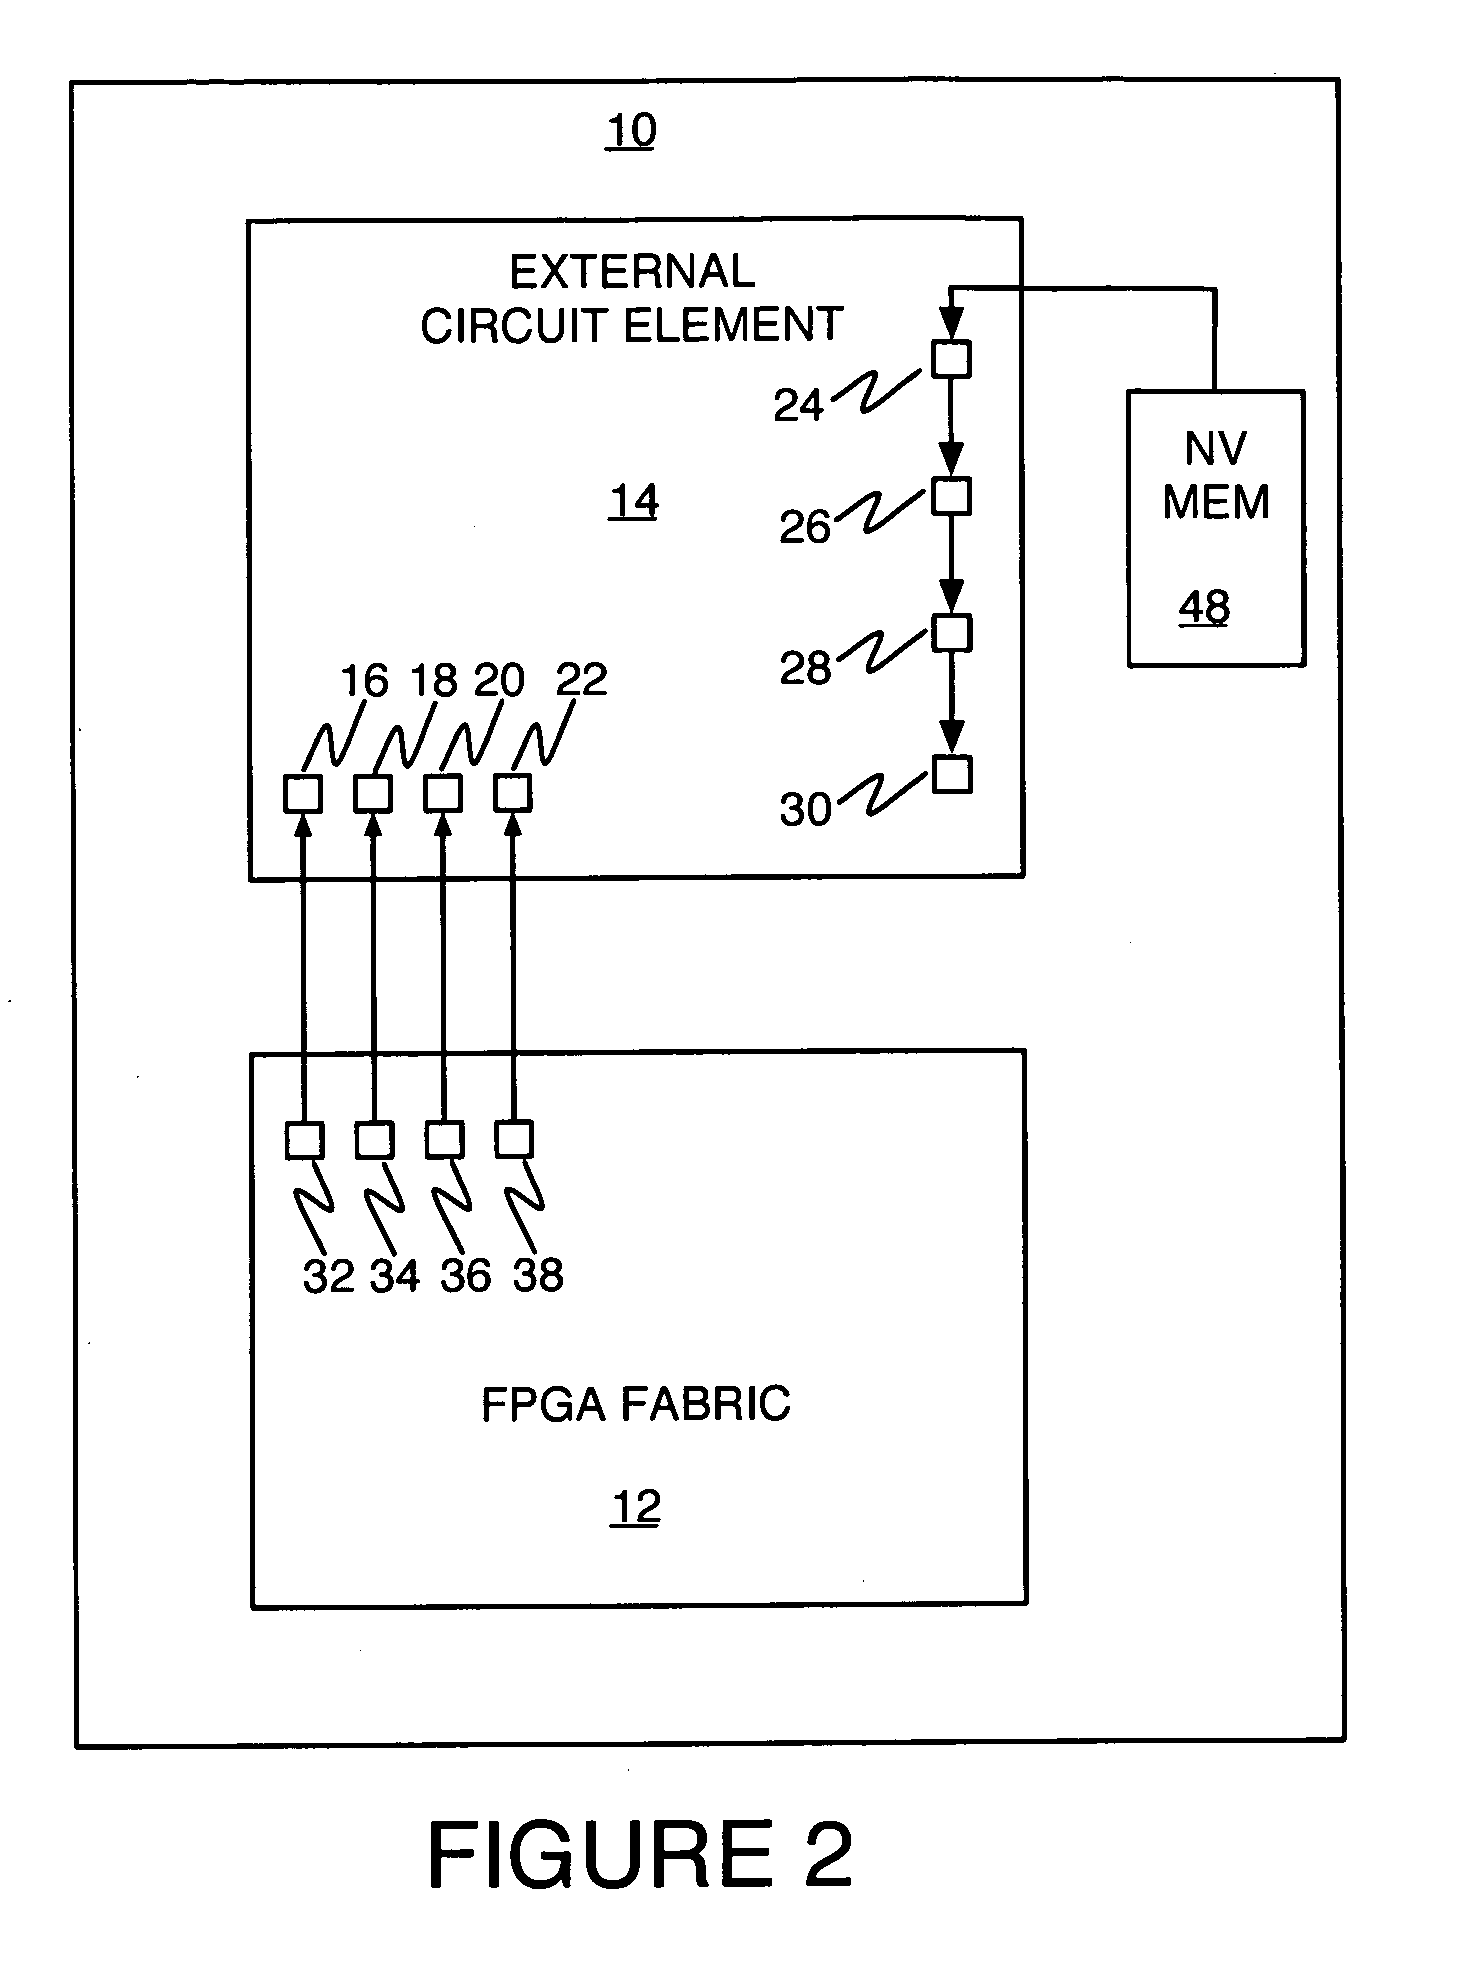 Non-volatile memory configuration scheme for volatile-memory-based programmable circuits in an FPGA